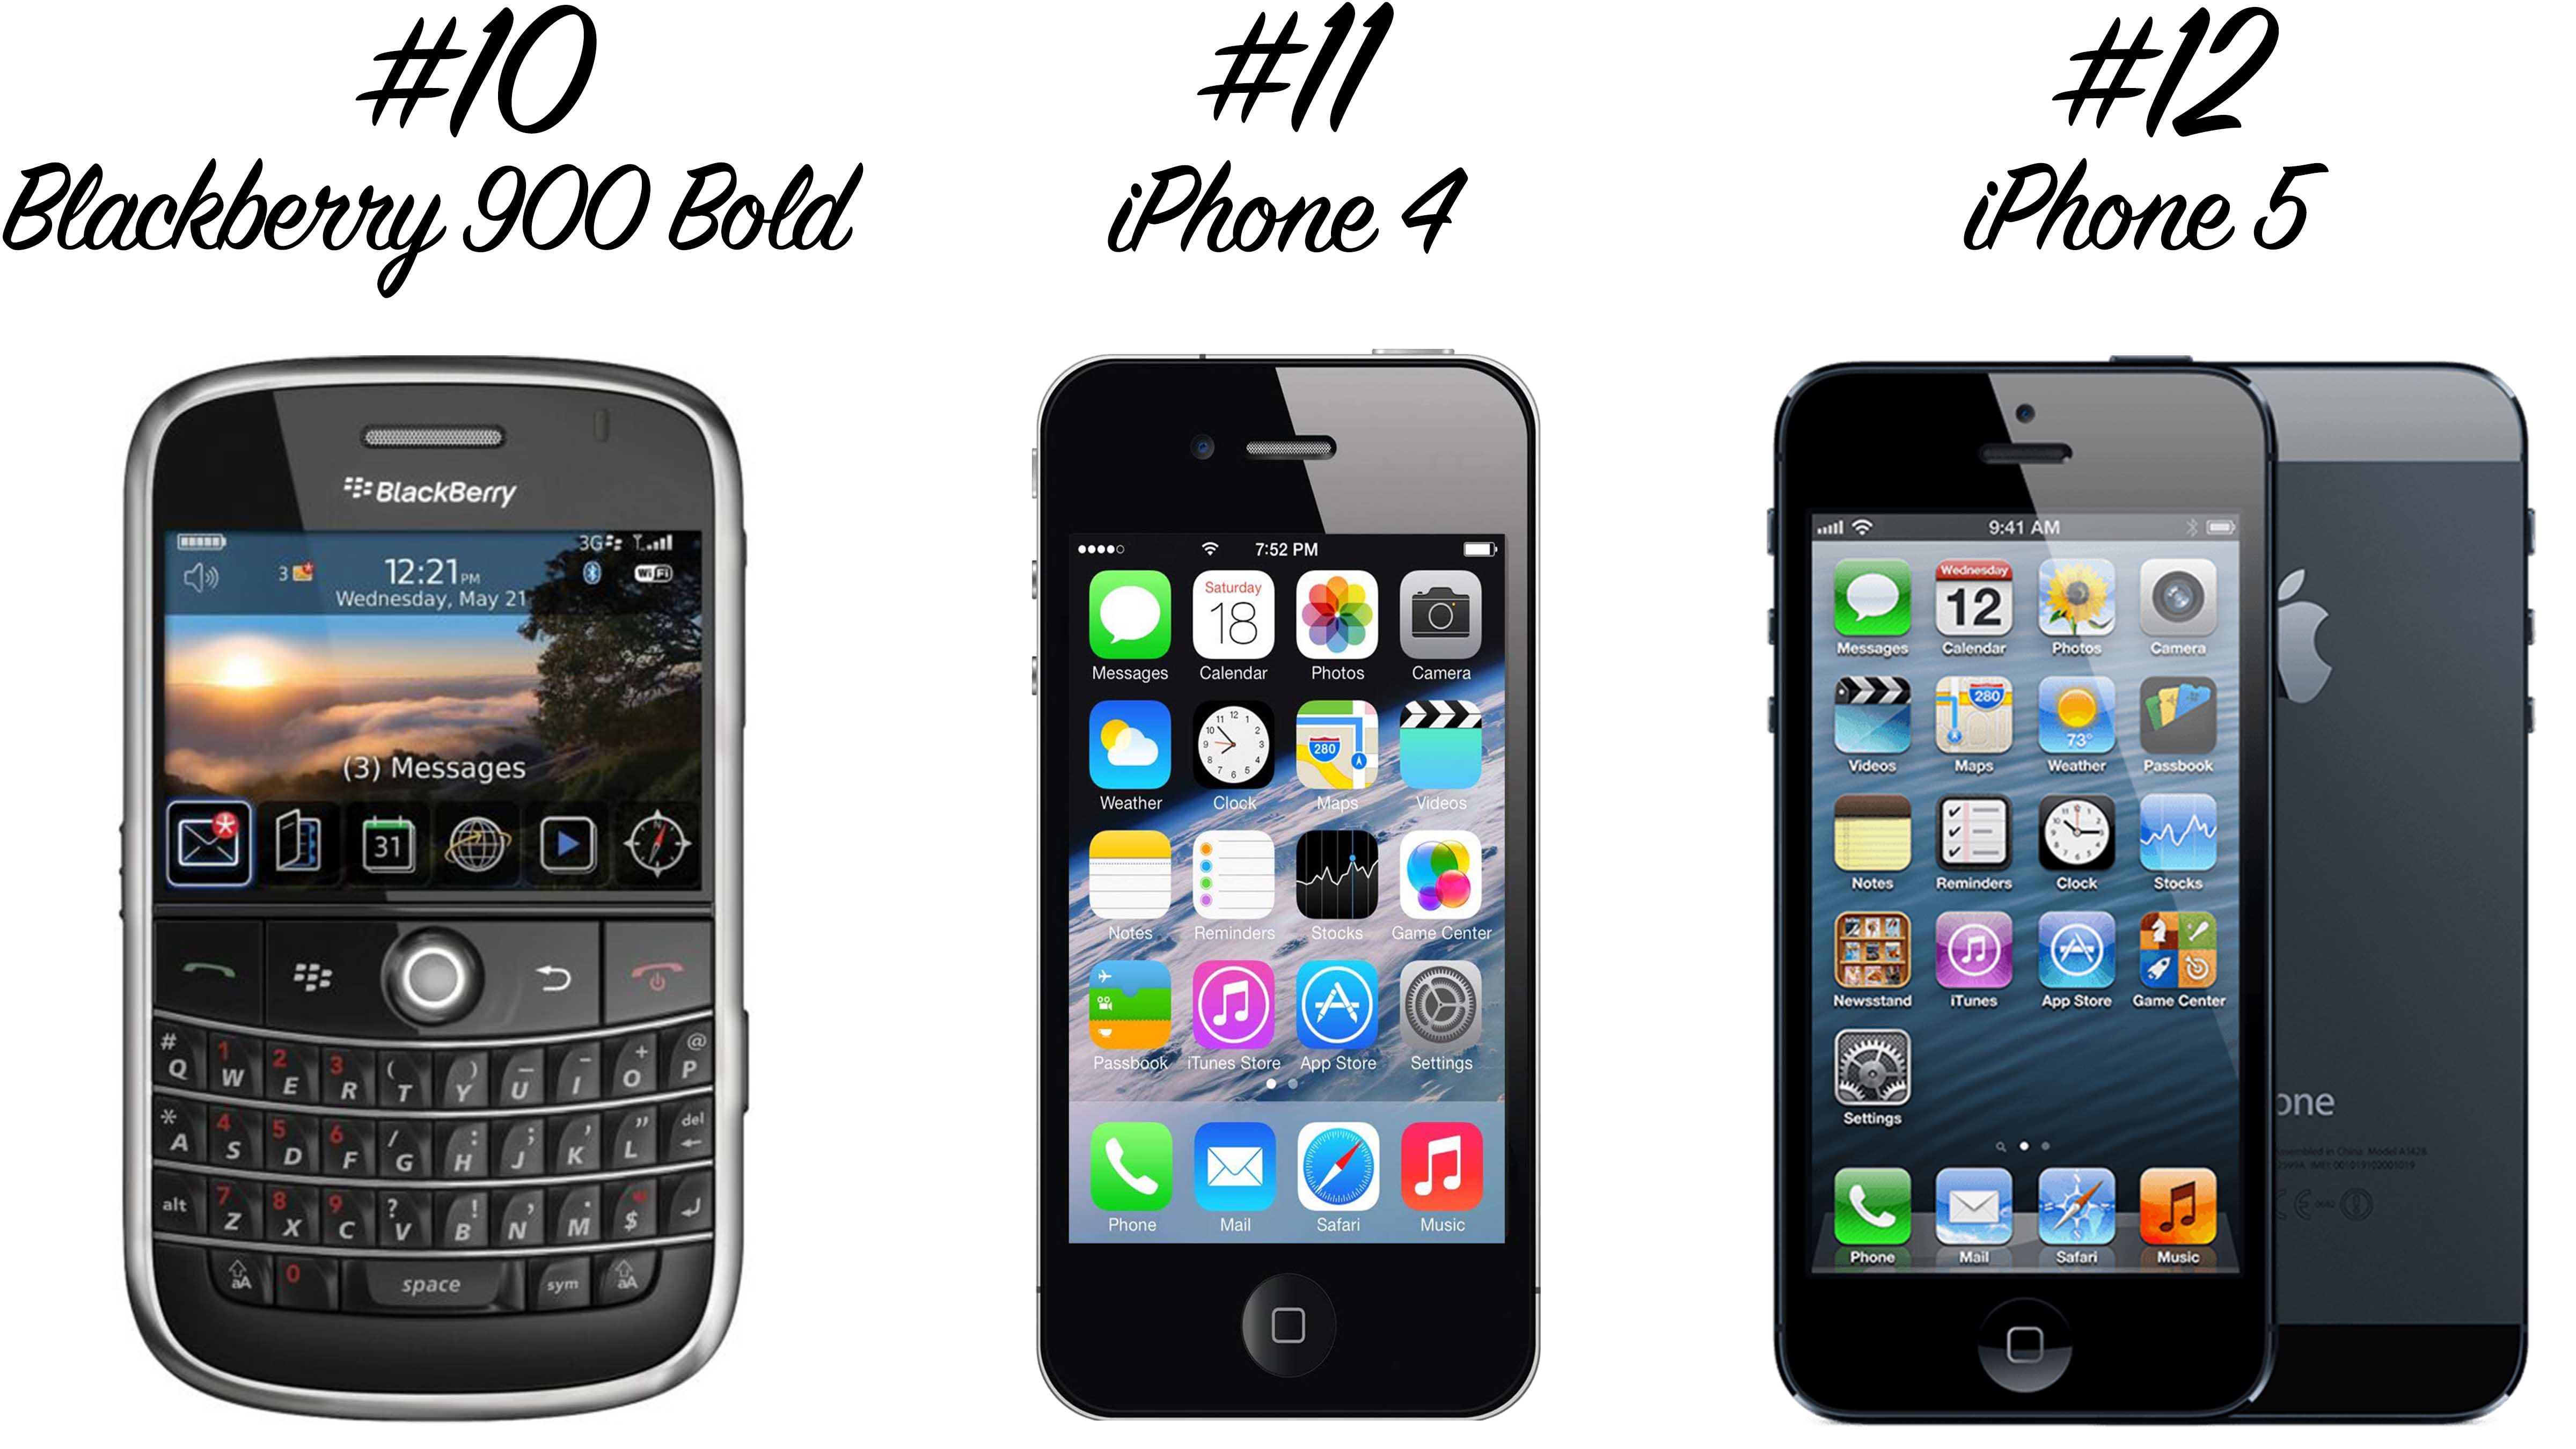 Retro Handys: Blackberry 900 Bold, iPhone 4, iPhone 5